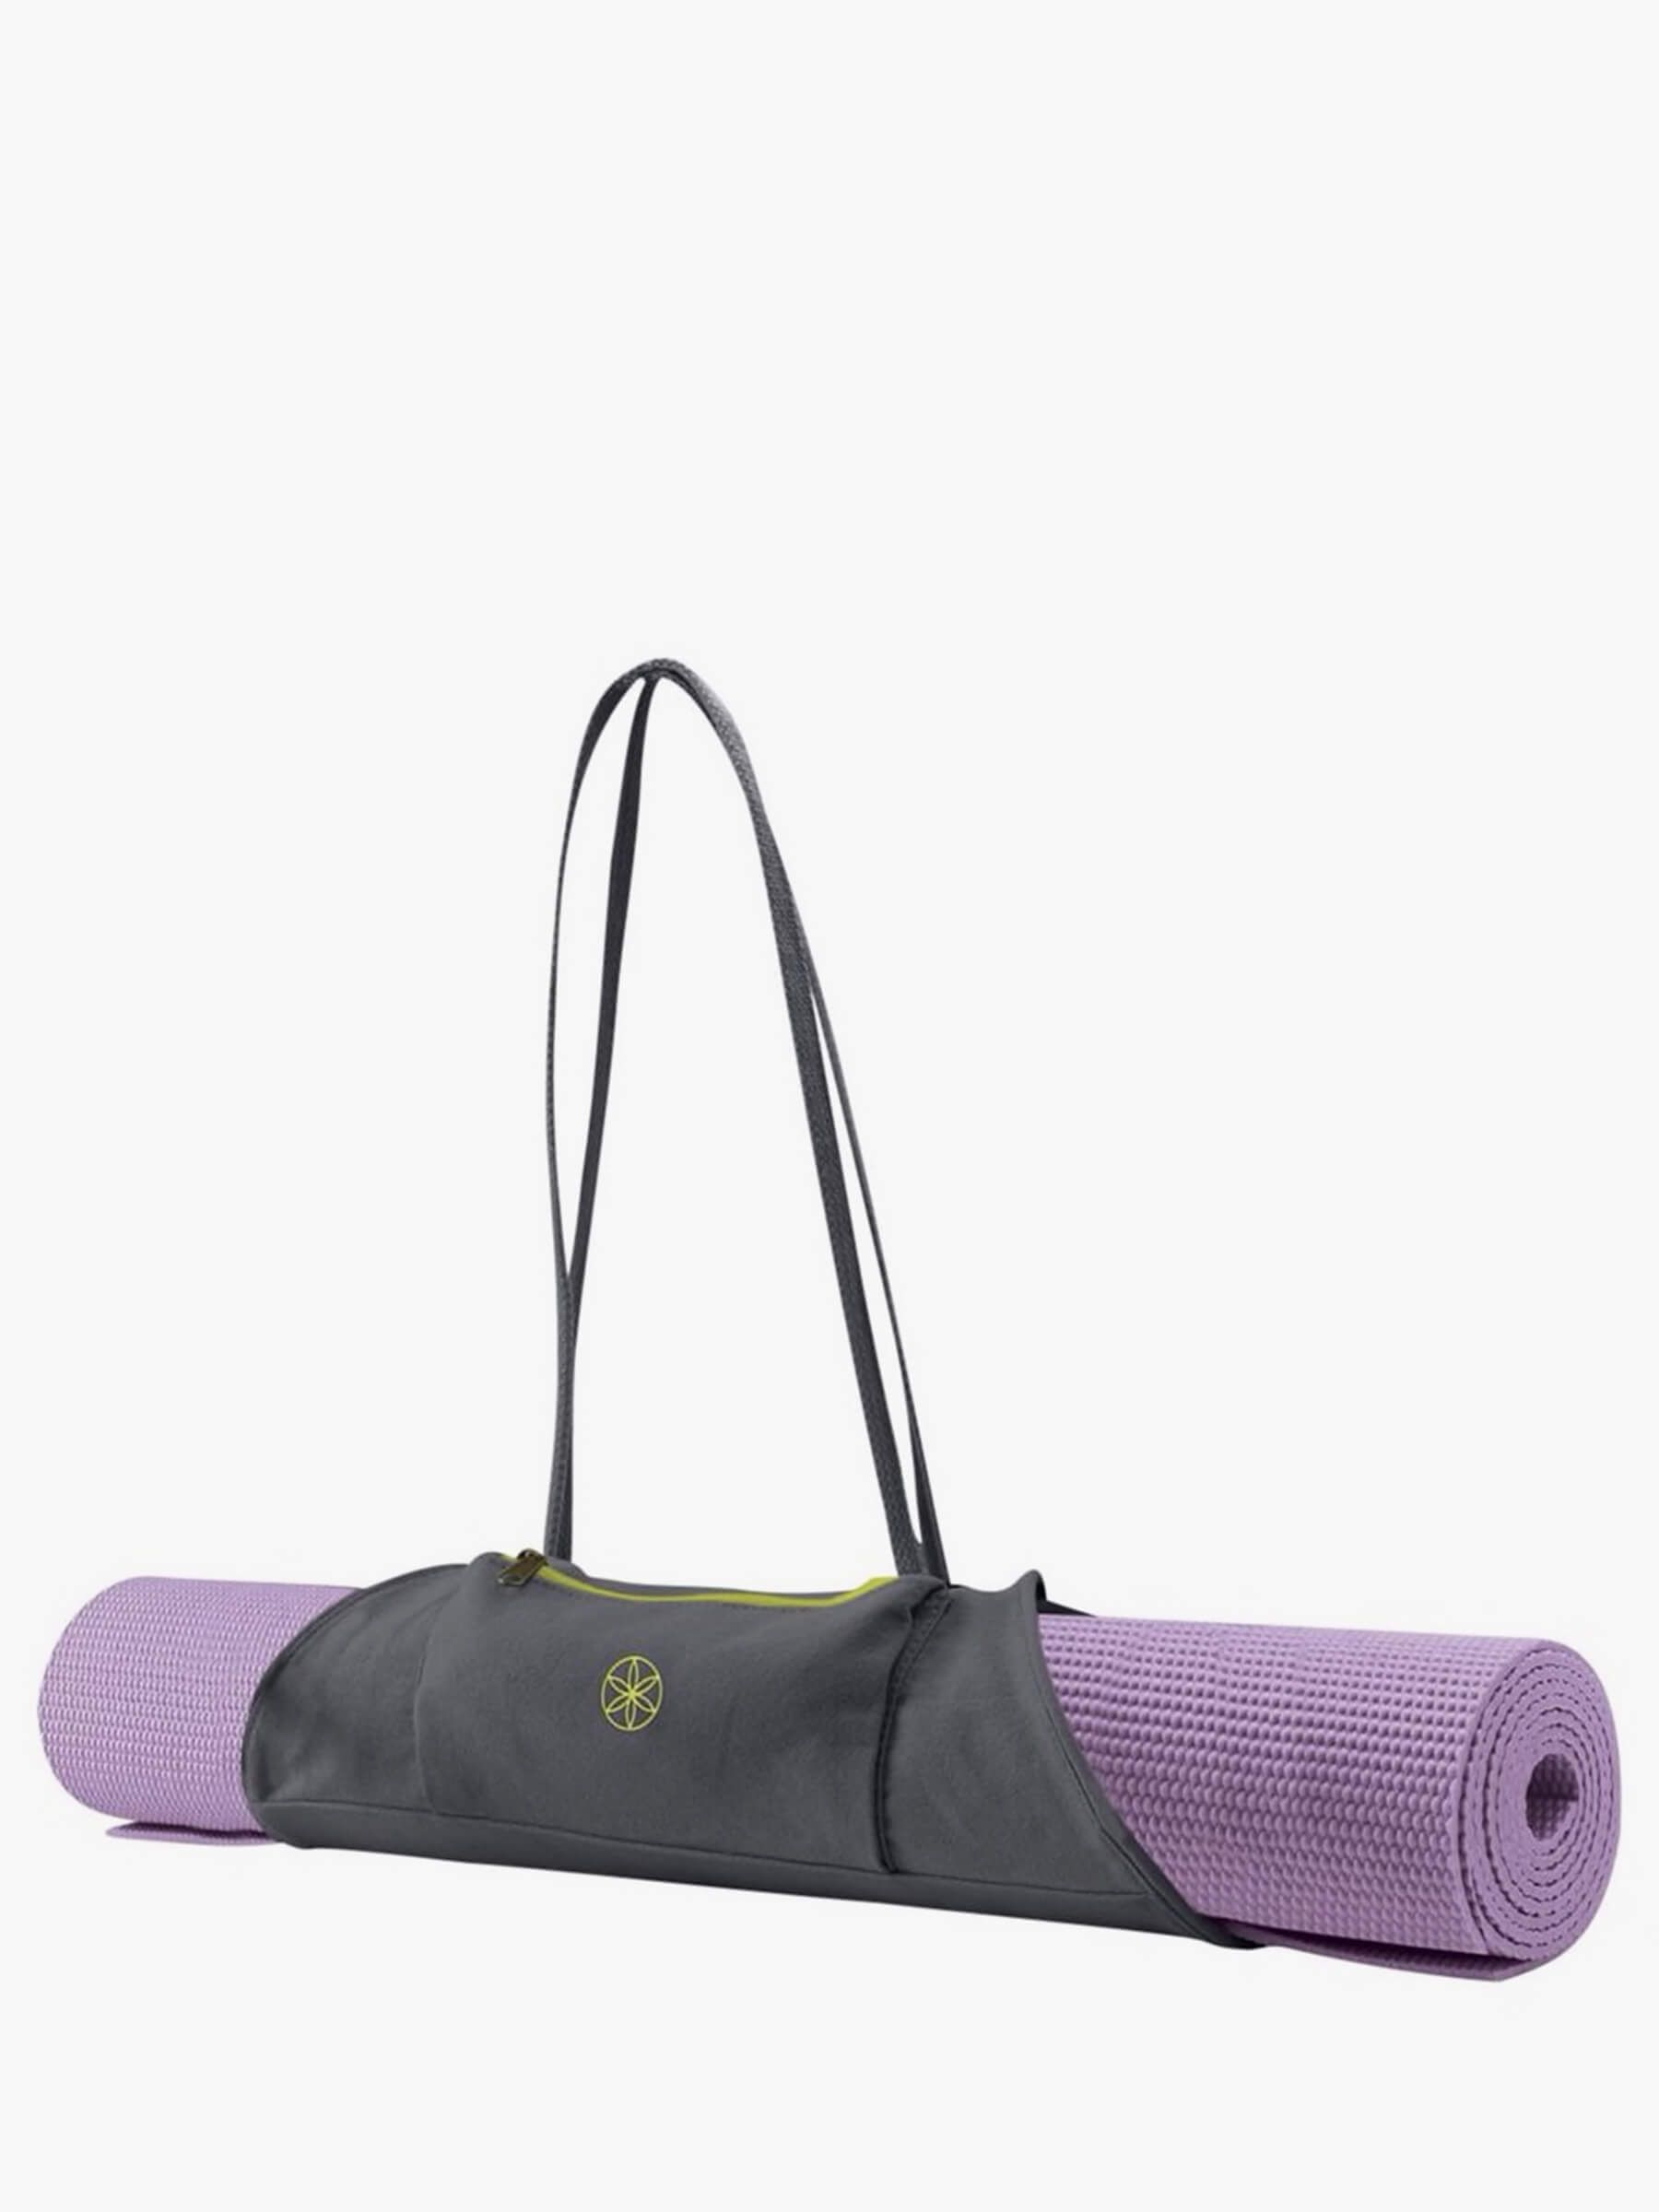 Gaiam Gaiam Turquoise Sea Yoga Mat Bag - Sports Equipment